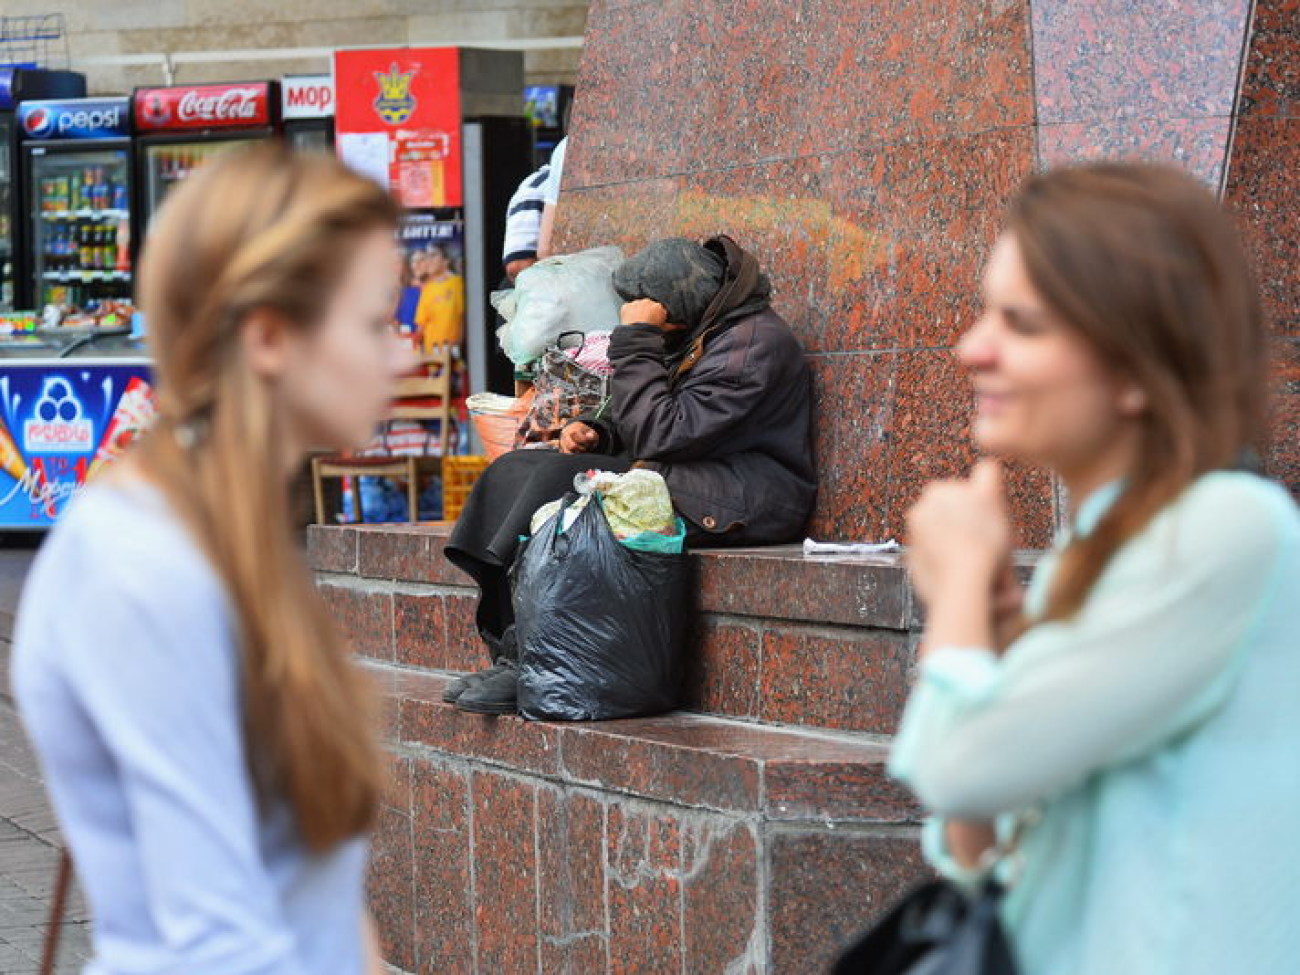 Киев &#171;чистят&#187; от киосков